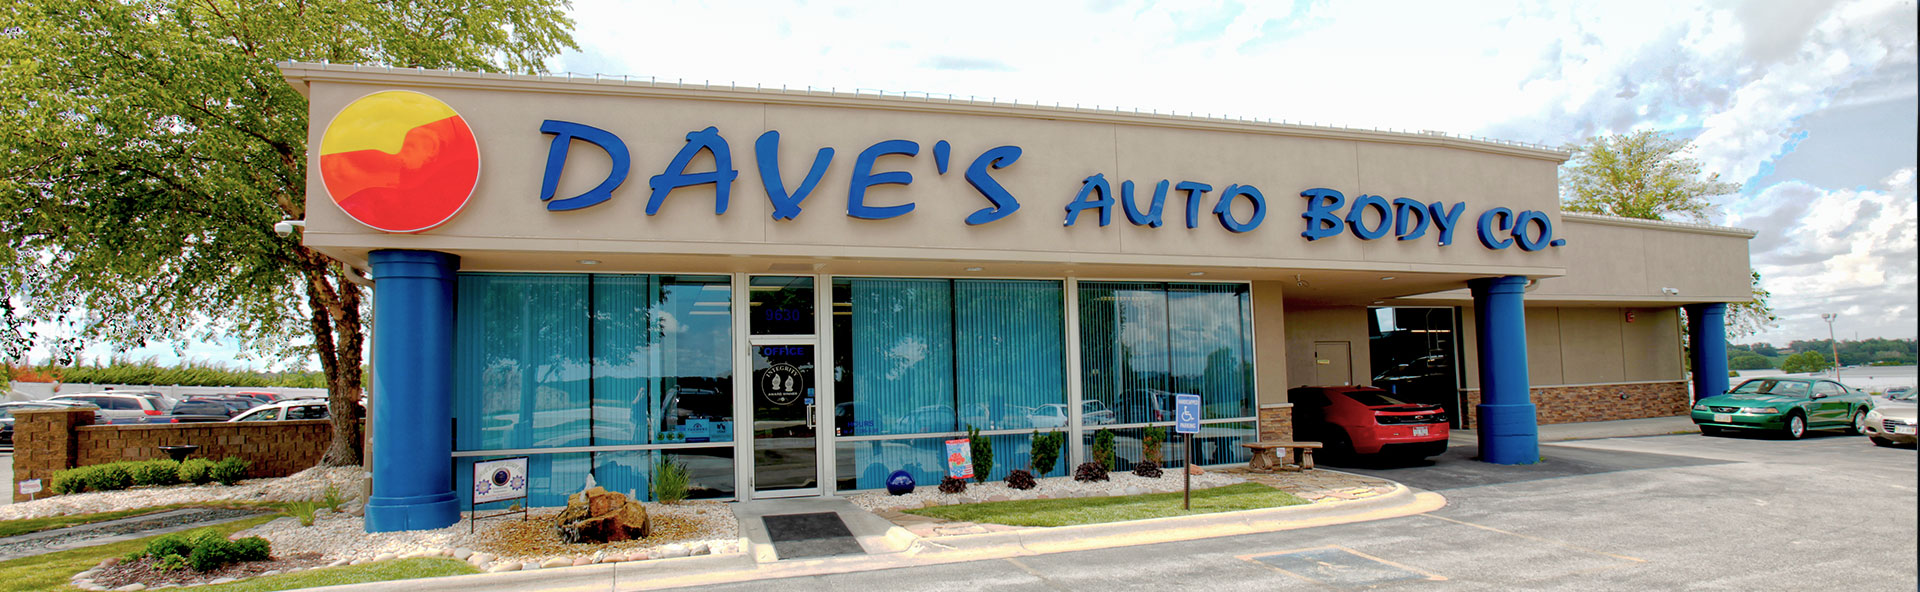 Dave's Auto Body Location